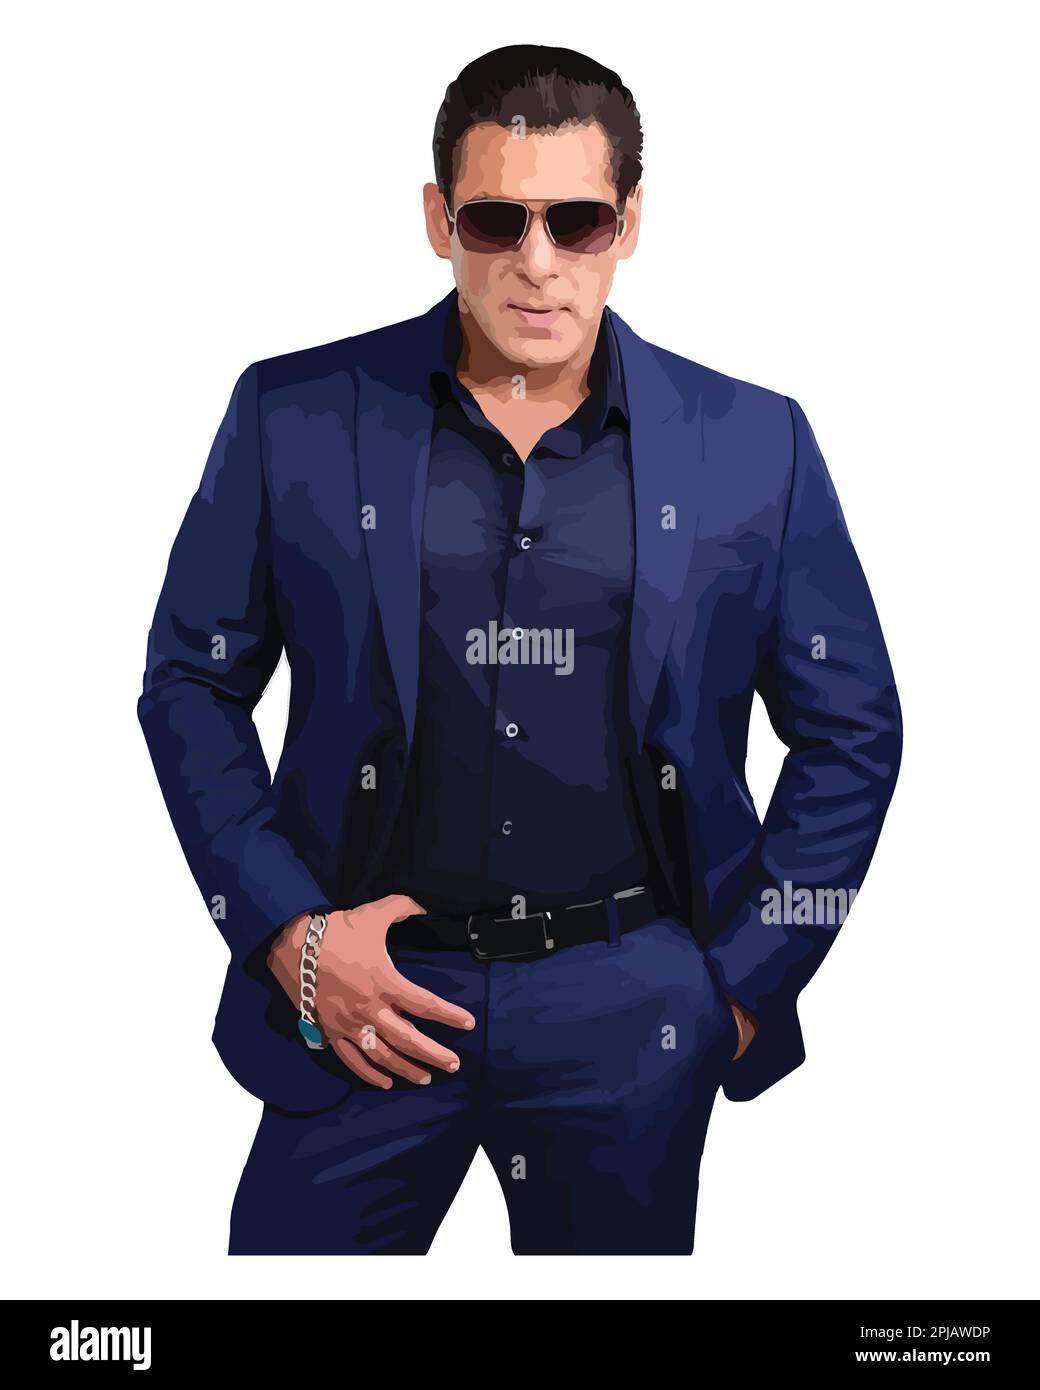 Salman Khan attore indiano Vector Illustration immagine astratta Illustrazione Vettoriale